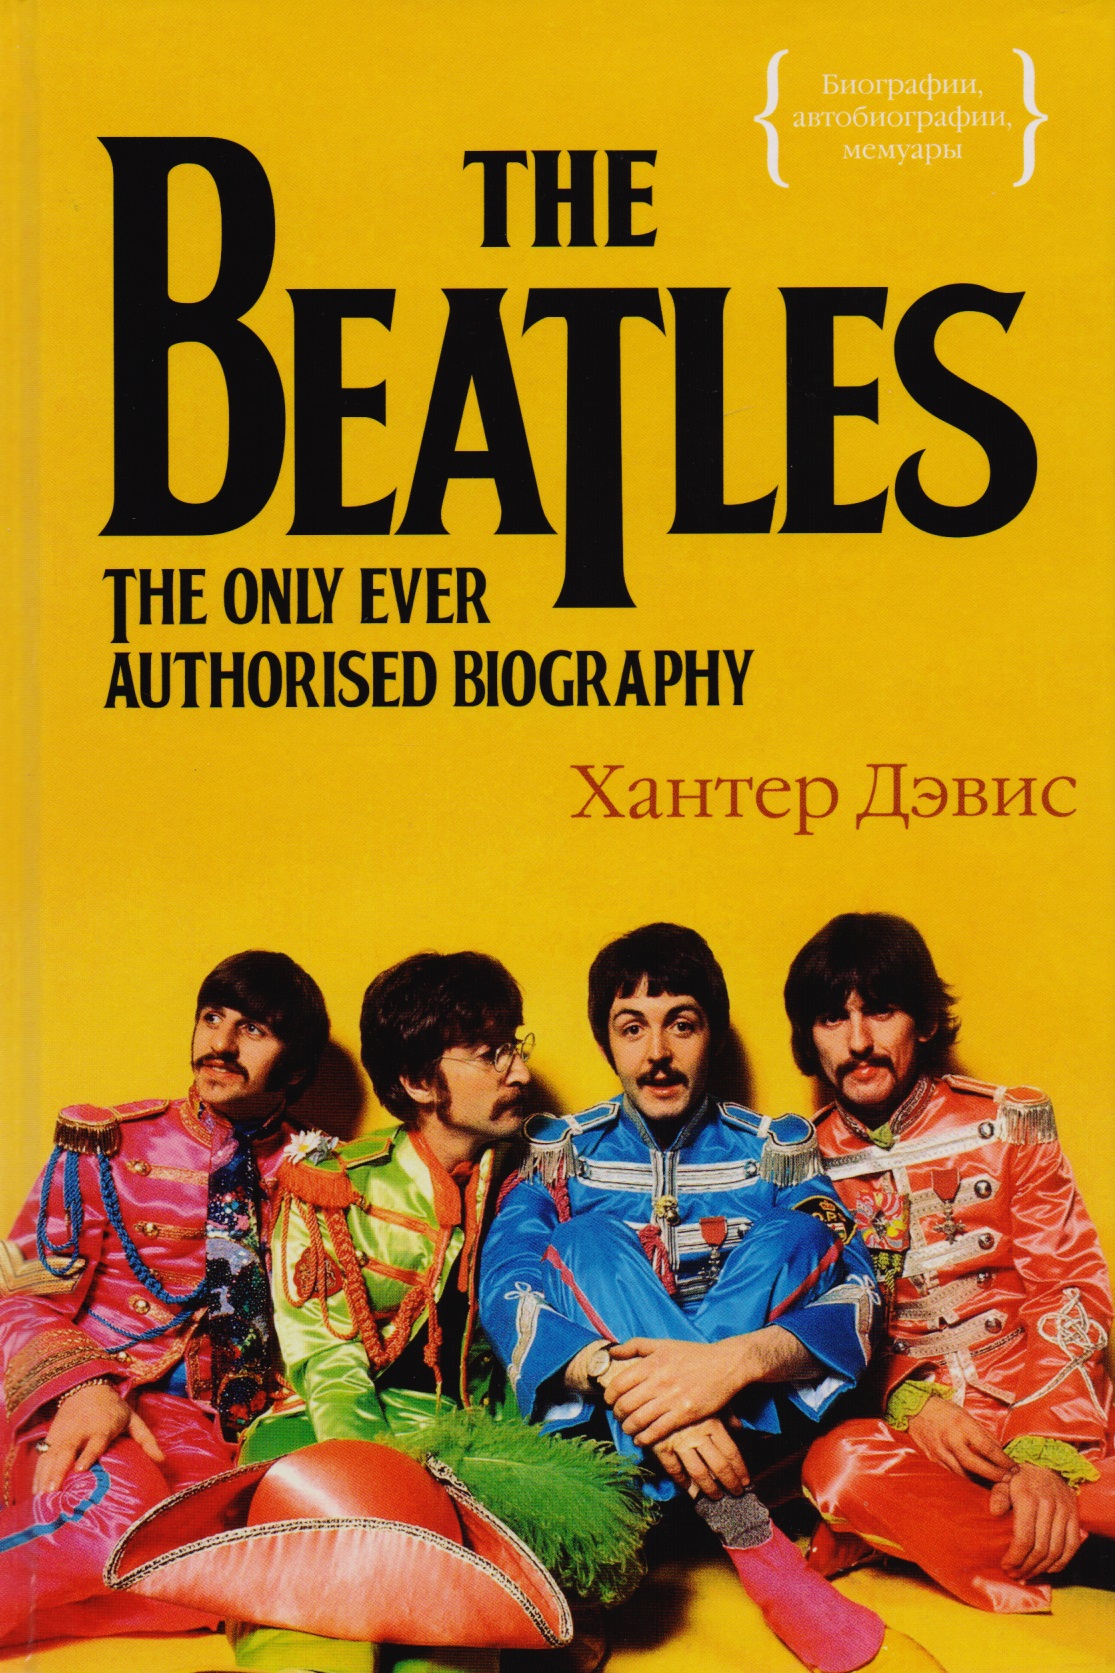 хилл тим the beatles иллюстрированная биография The Beatles. Единственная на свете авторизованная биография